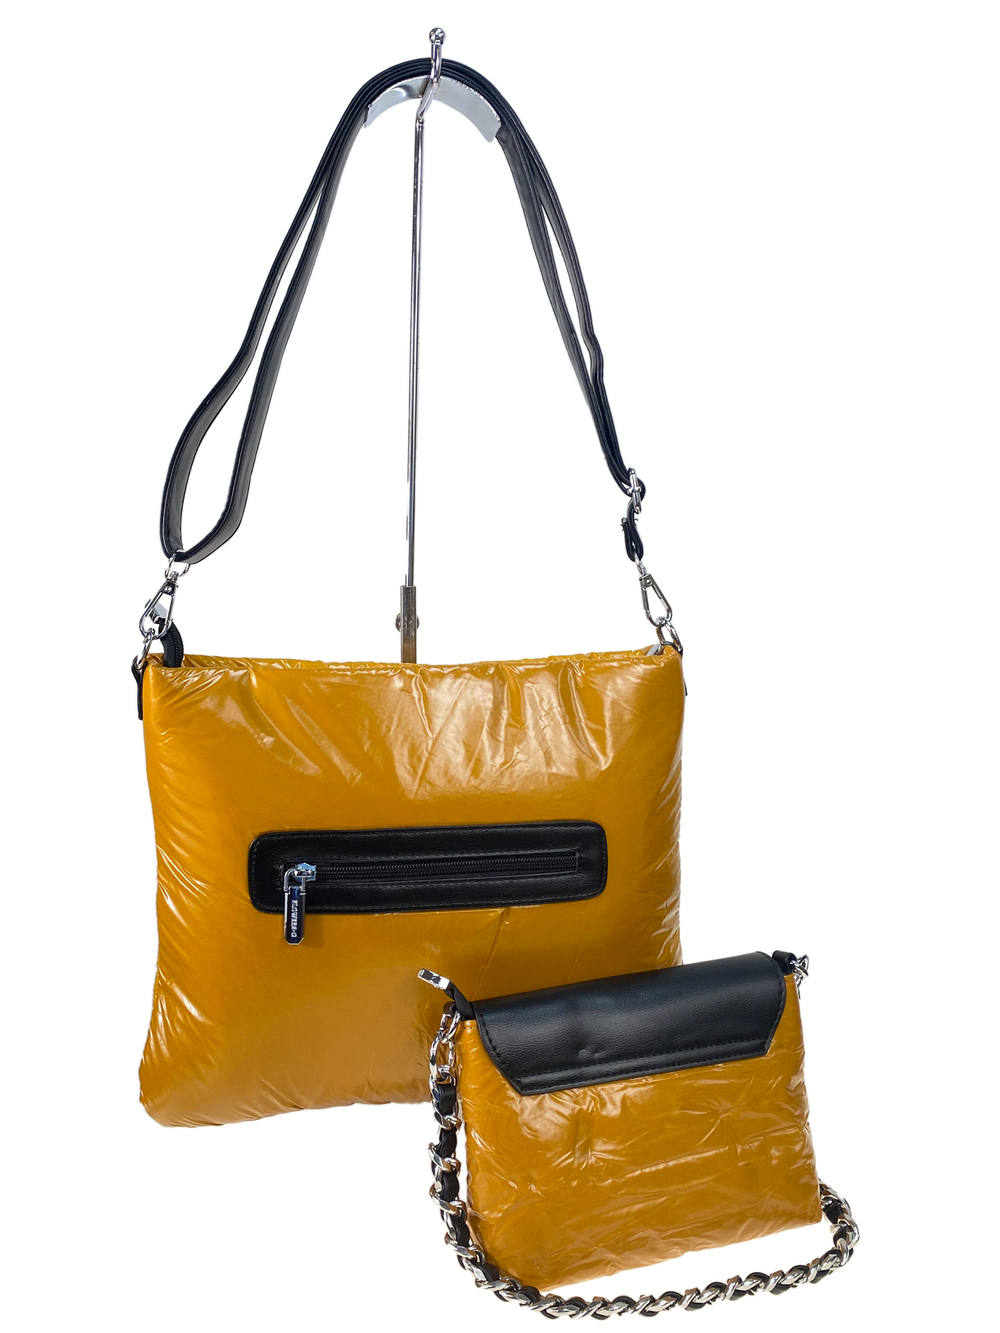 Cтильная женская сумка-шоппер из водоотталкивающей ткани, цвет желтый